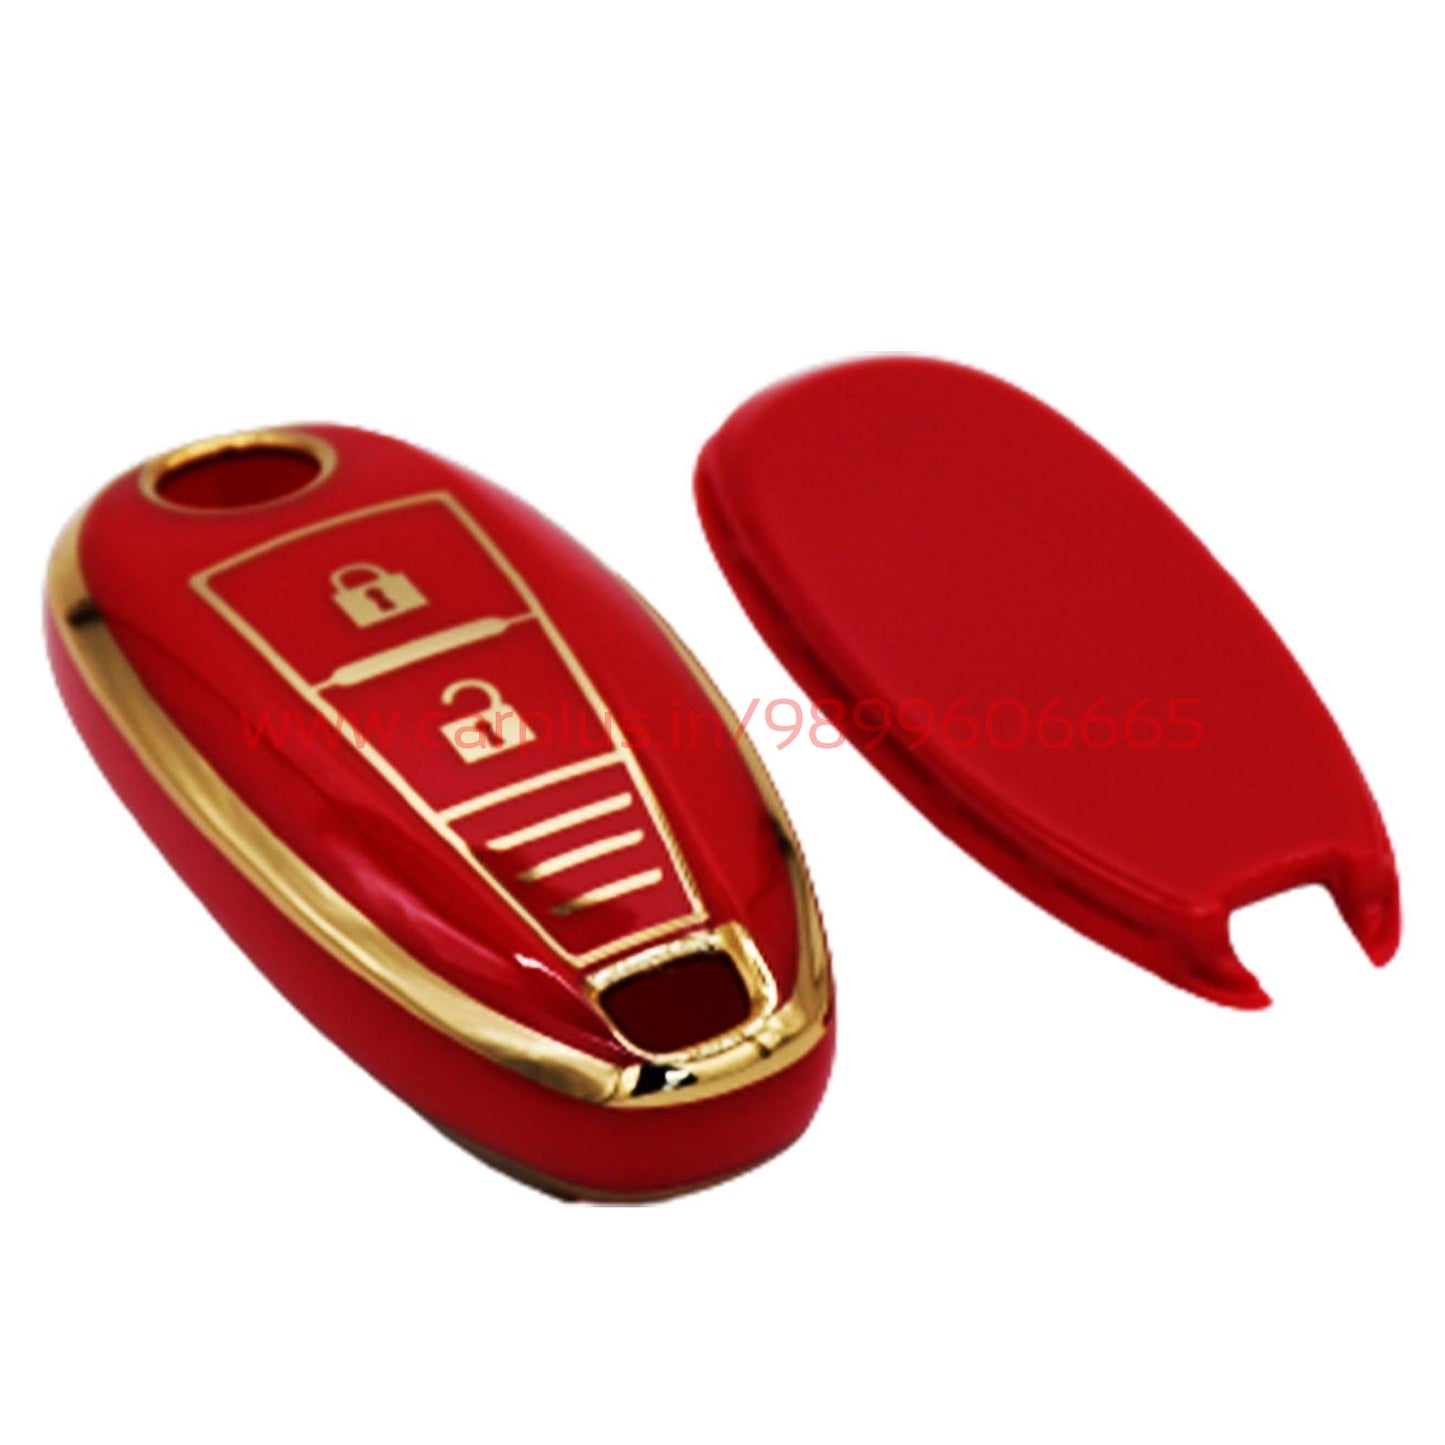 
                  
                    KMH - TPU Gold Car Key Cover Compatible for Maruti Suzuki Baleno | Brezza | Swift| Ignis Compatible with 2 Button Smart Key Cover-TPU GOLD KEY COVER-KMH-KEY COVER-Black-CARPLUS
                  
                